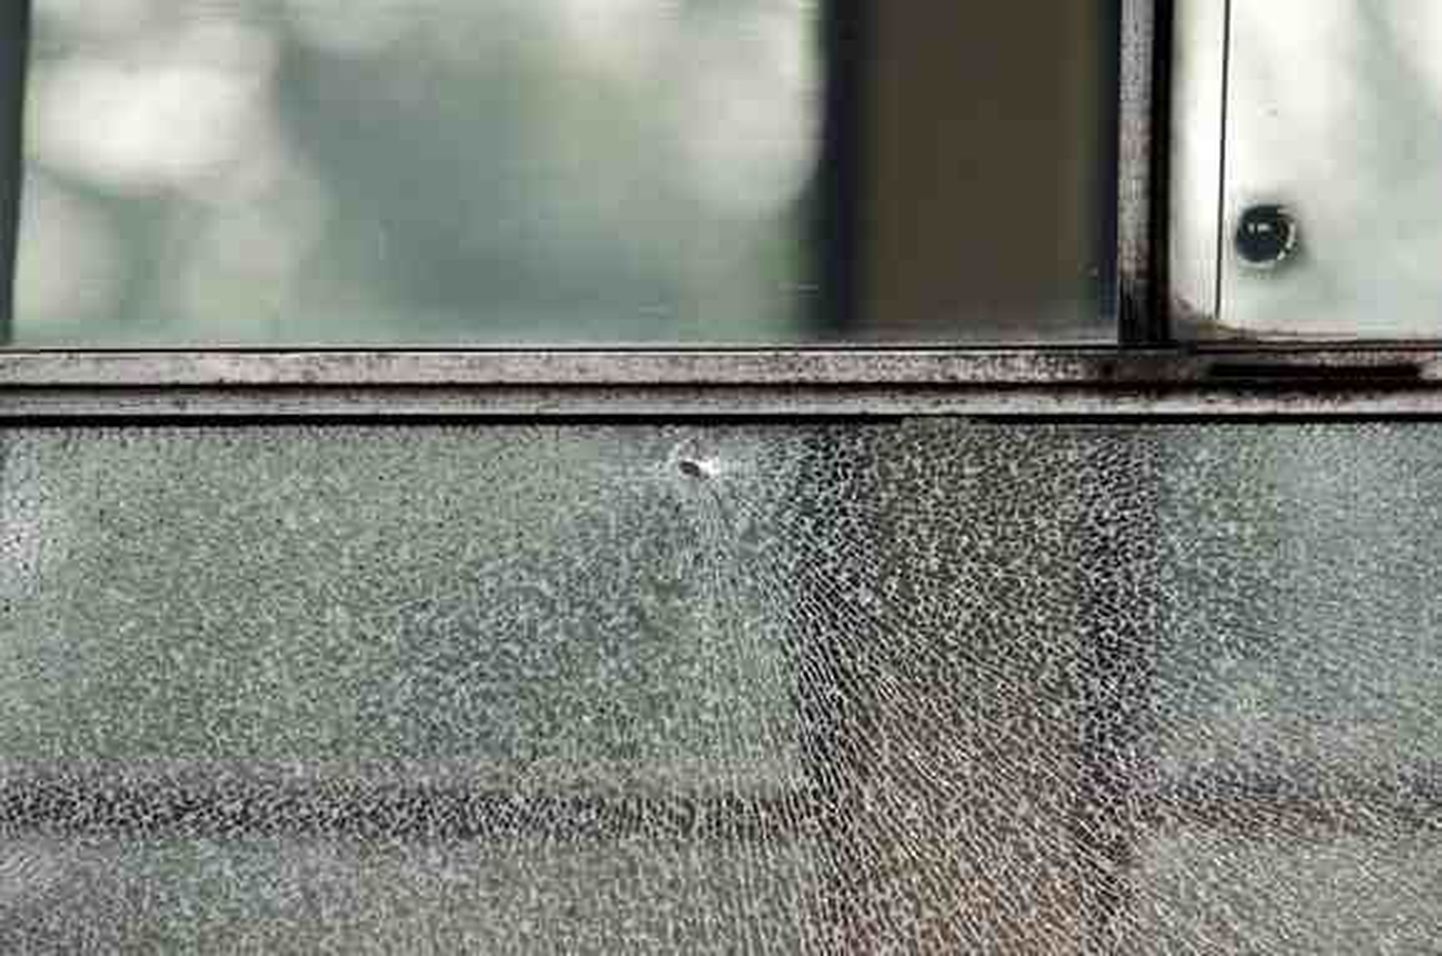 Попаданием пули из пневматического оружия разбито окно трамвая.